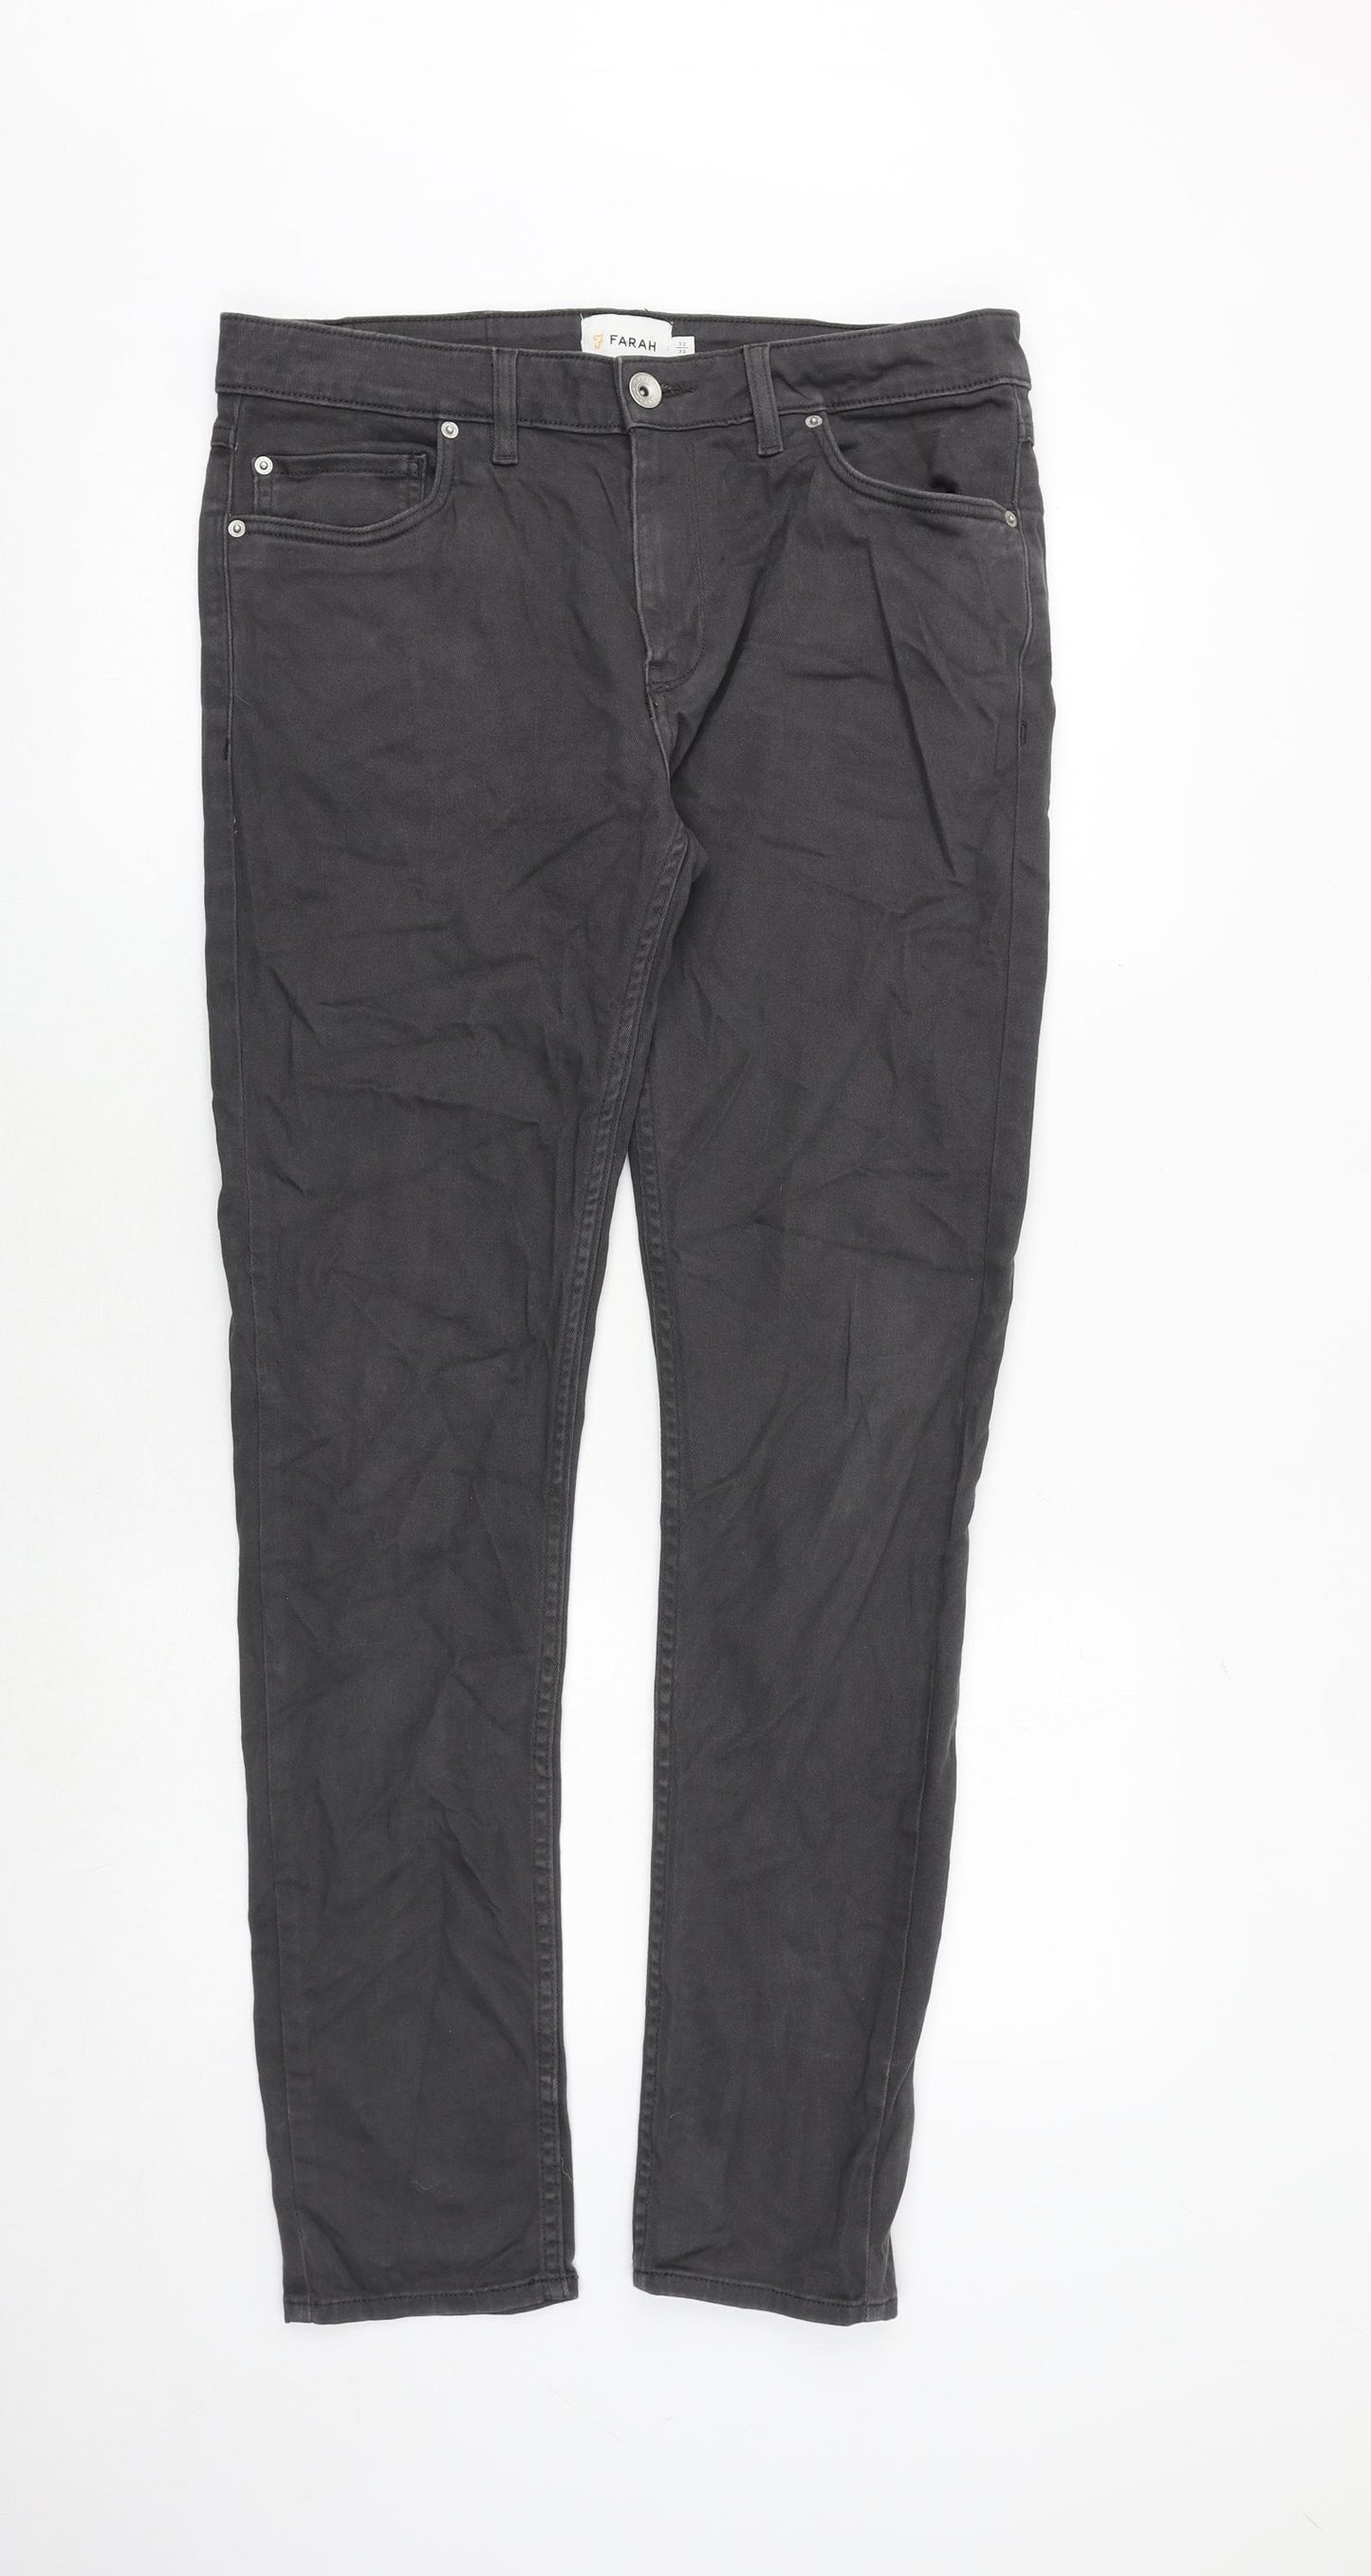 Farah Mens Grey Cotton Skinny Jeans Size 32 in Regular Zip